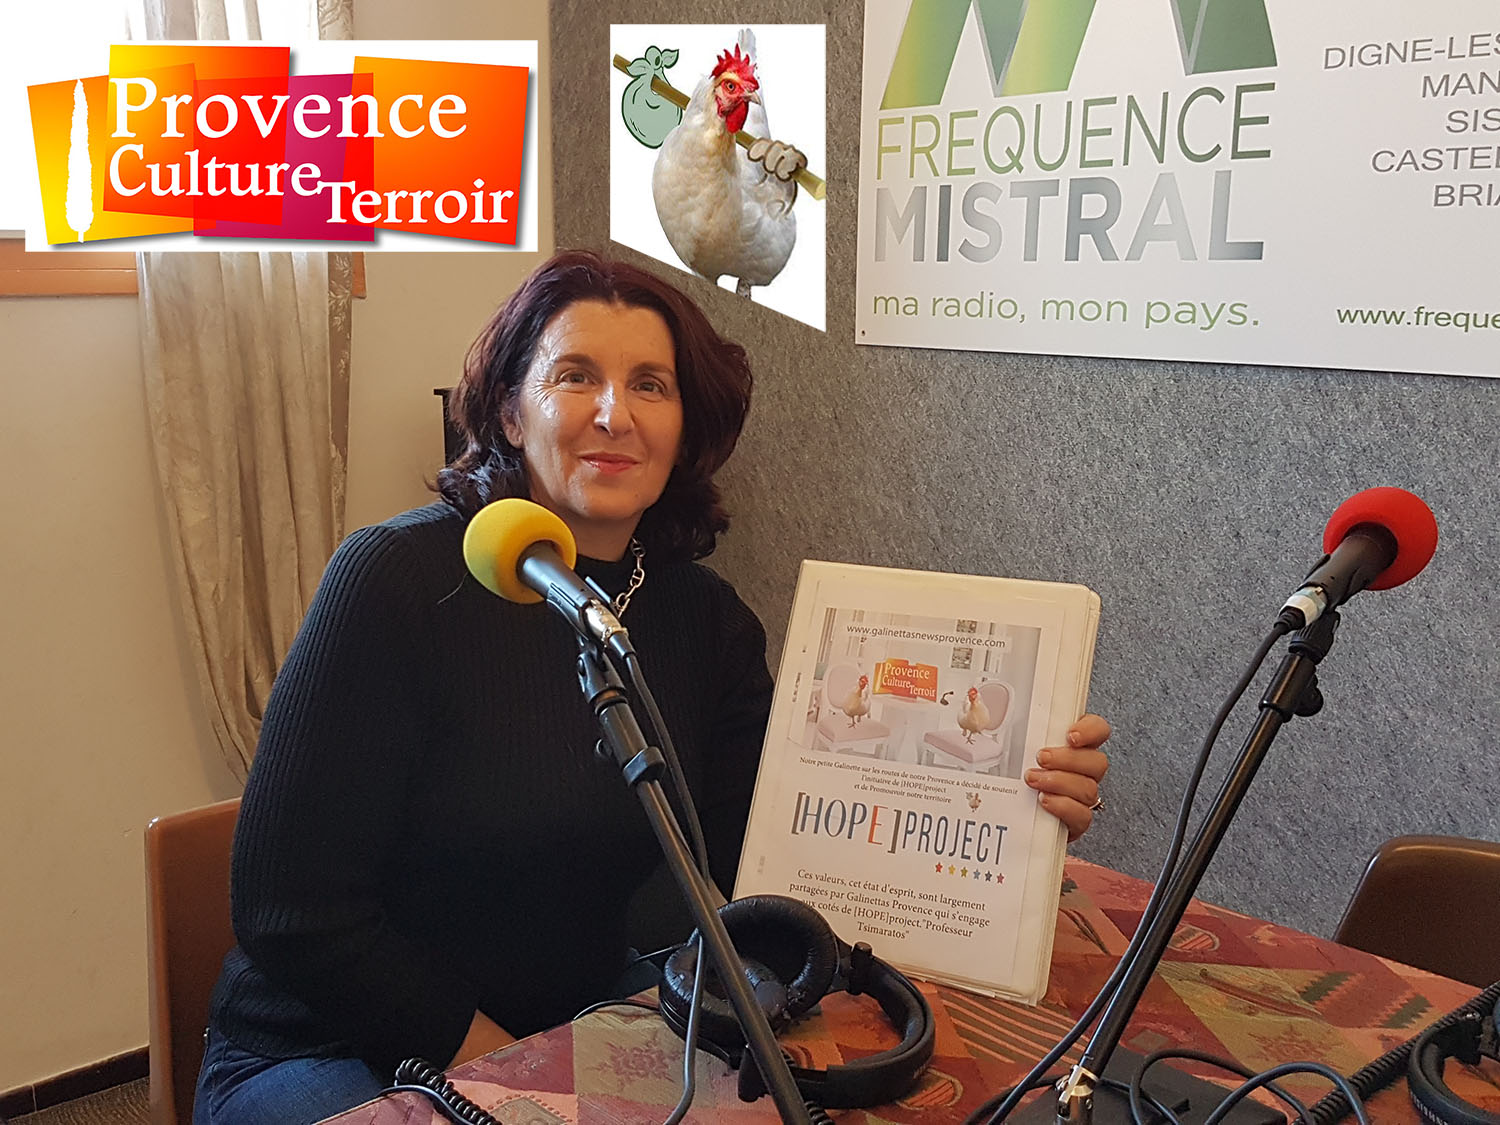 La galinette continue son périple en Provence à la rencontre des savoir-faire du terroir